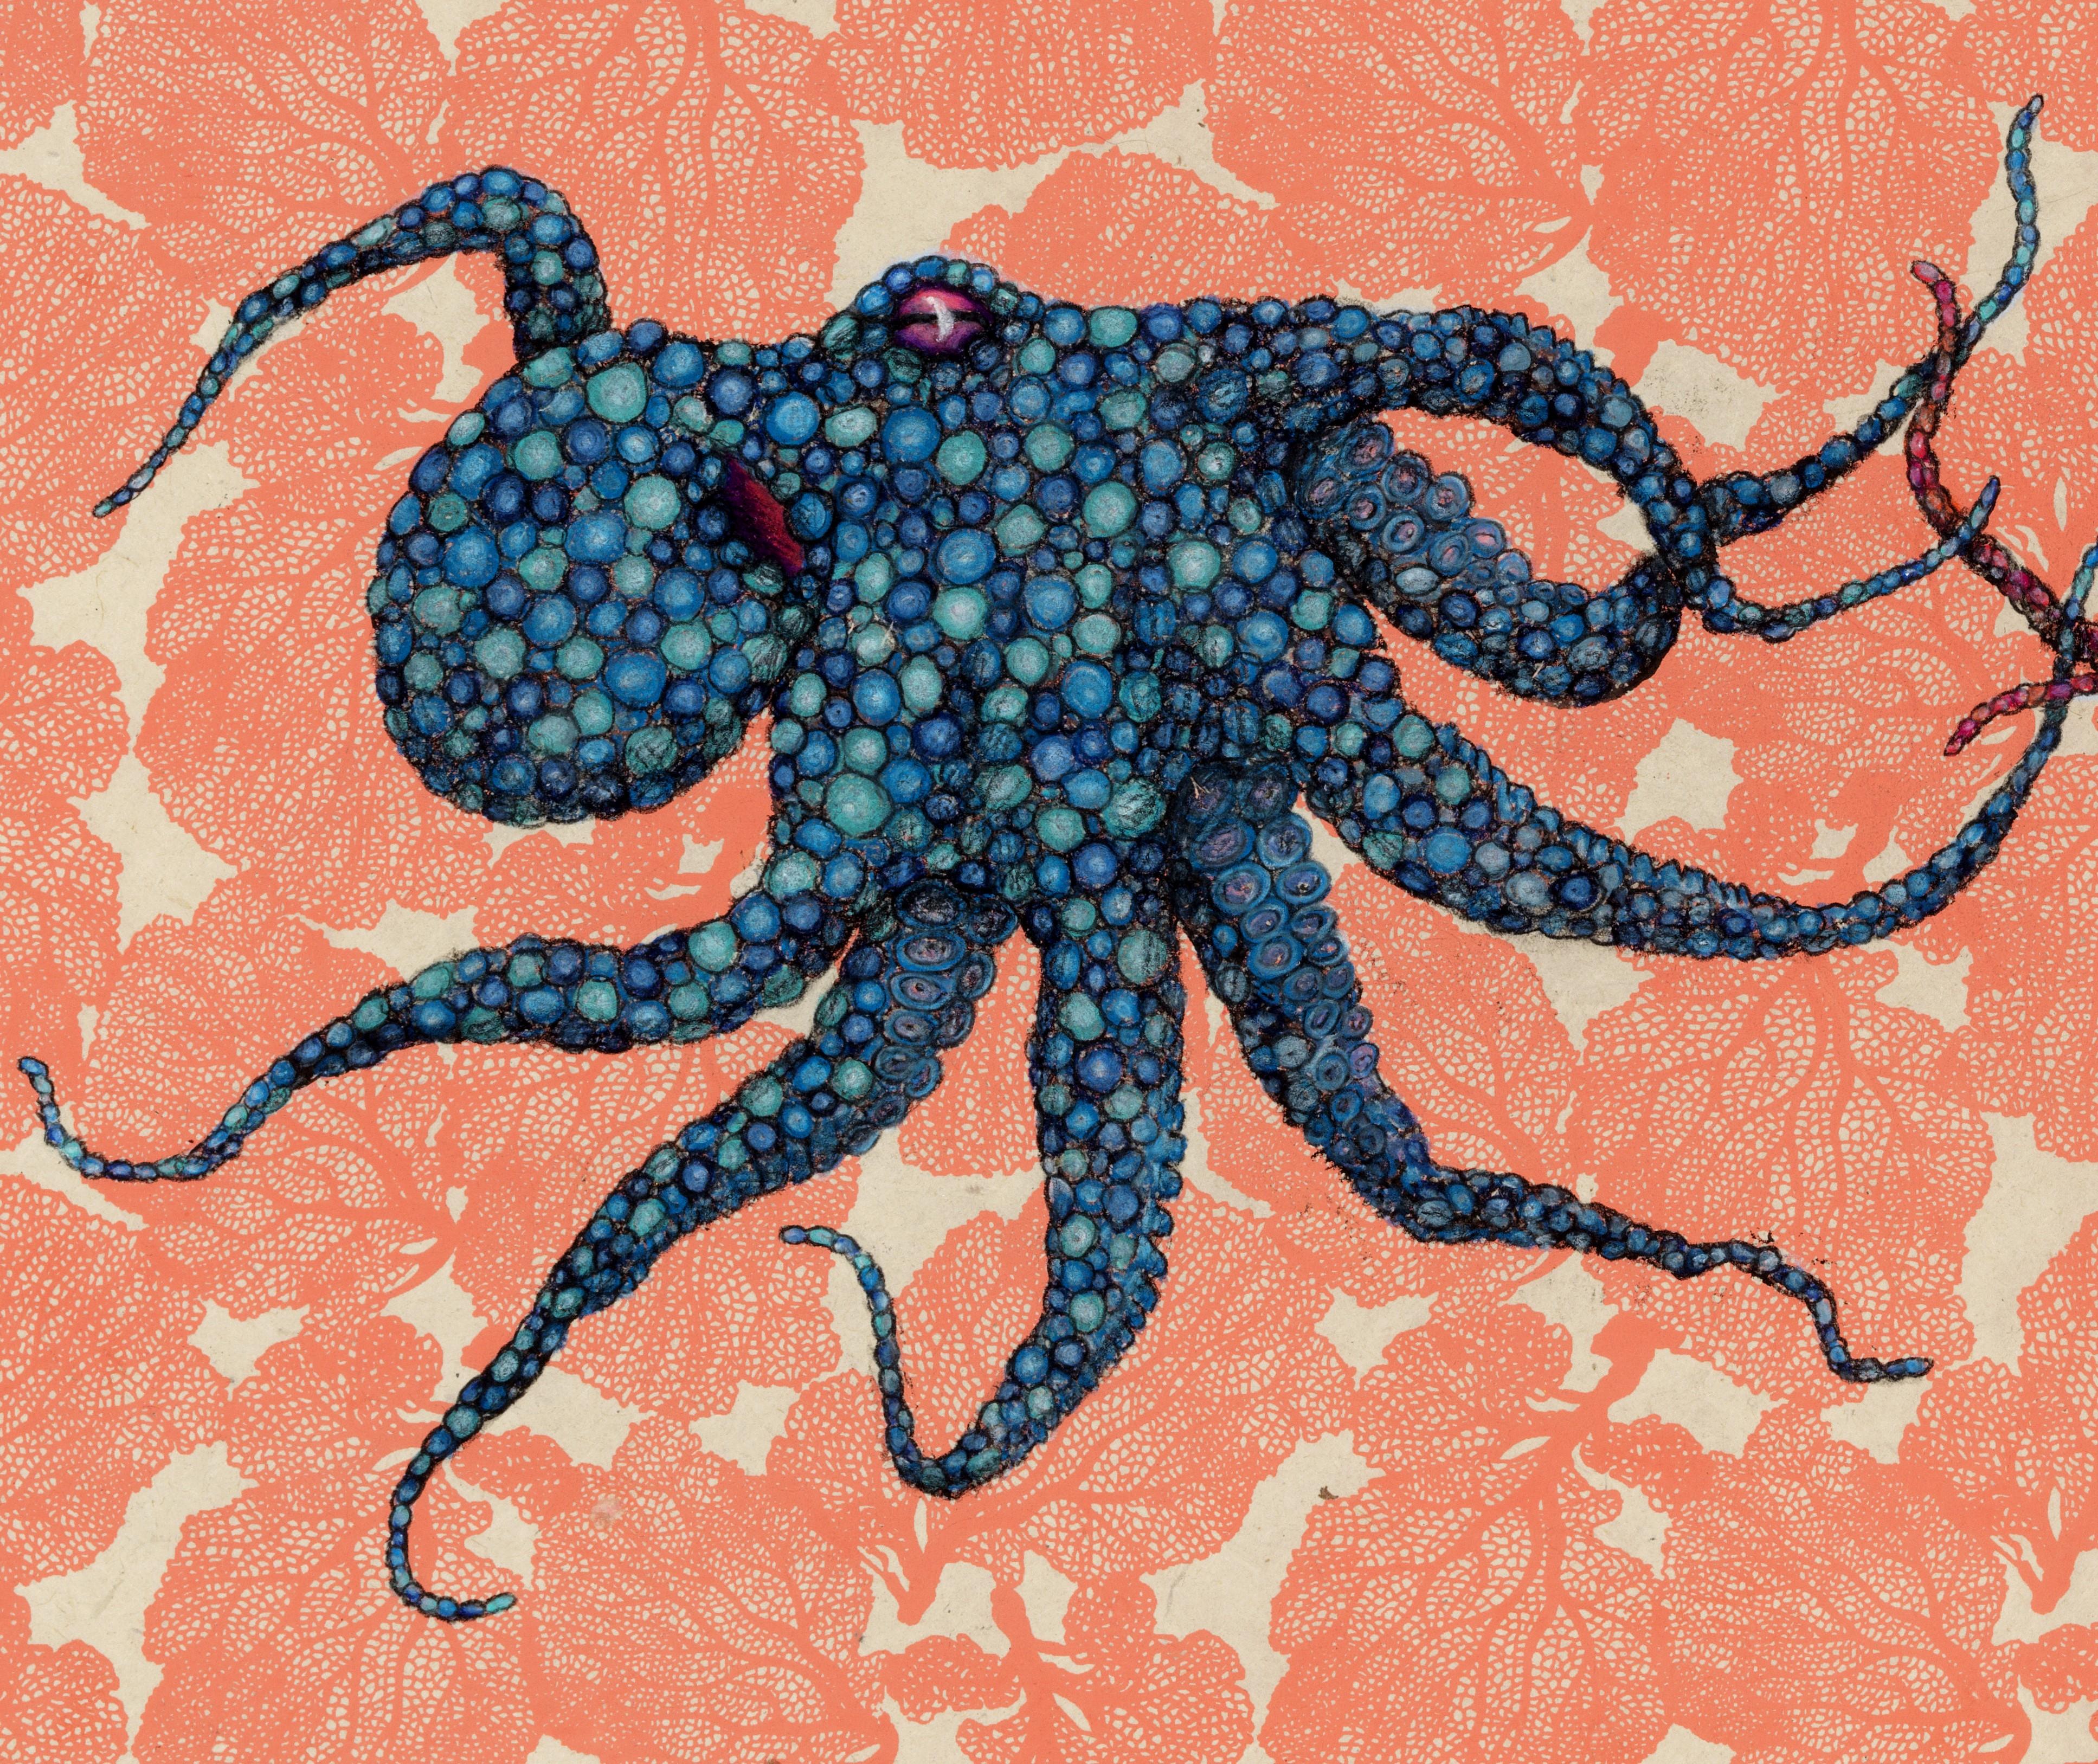 Éventail de mer - Bleu rencontre le rouge - Peinture à l'encre Sumi de style Gyotaku représentant un octope  - Contemporain Art par Jeff Conroy